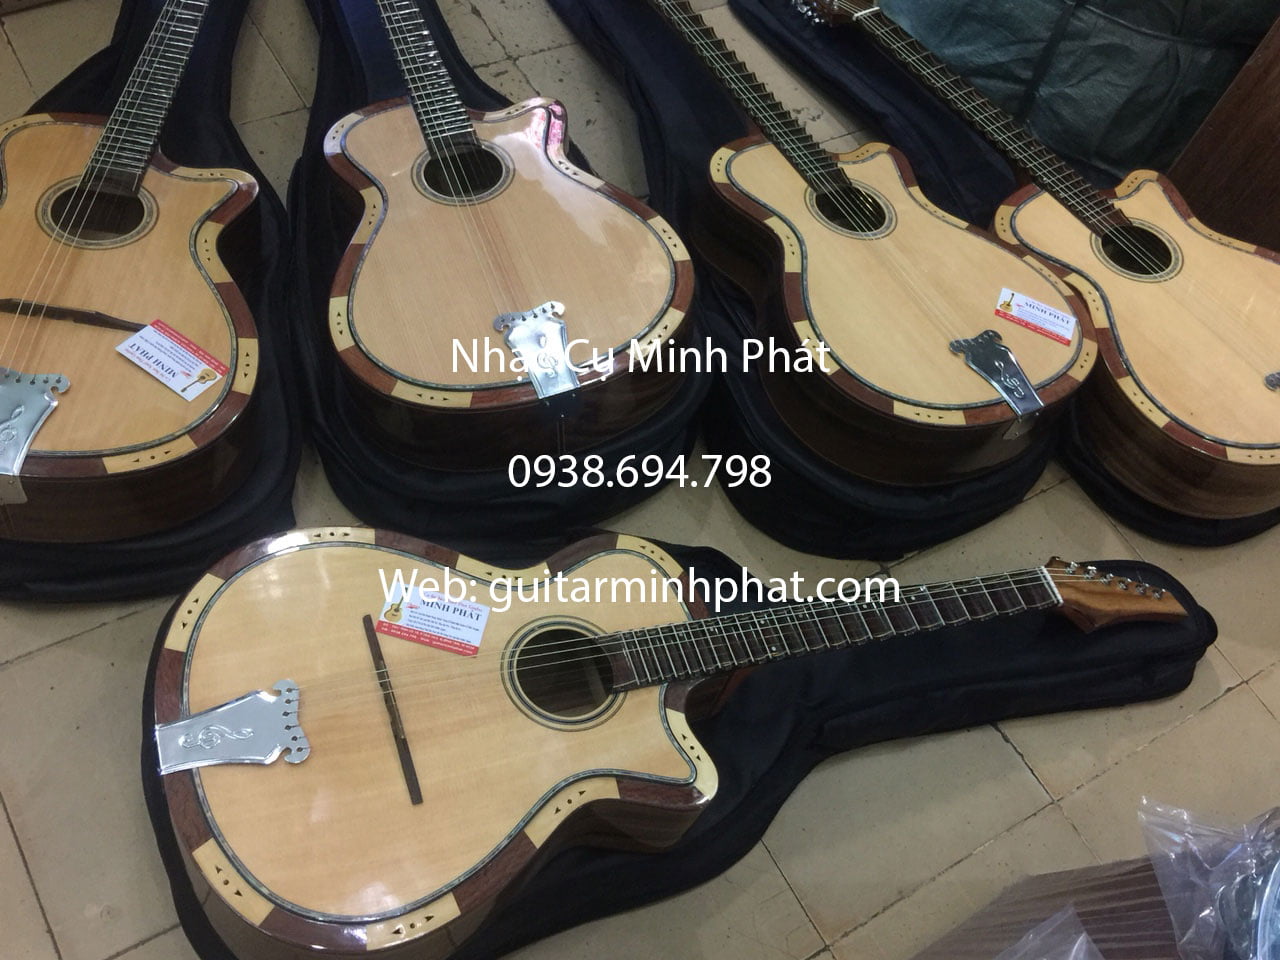 Shop bán guitar cổ thùng đà nẵng Mua-dan-guitar-vong-co-phim-lom-gia-re-4